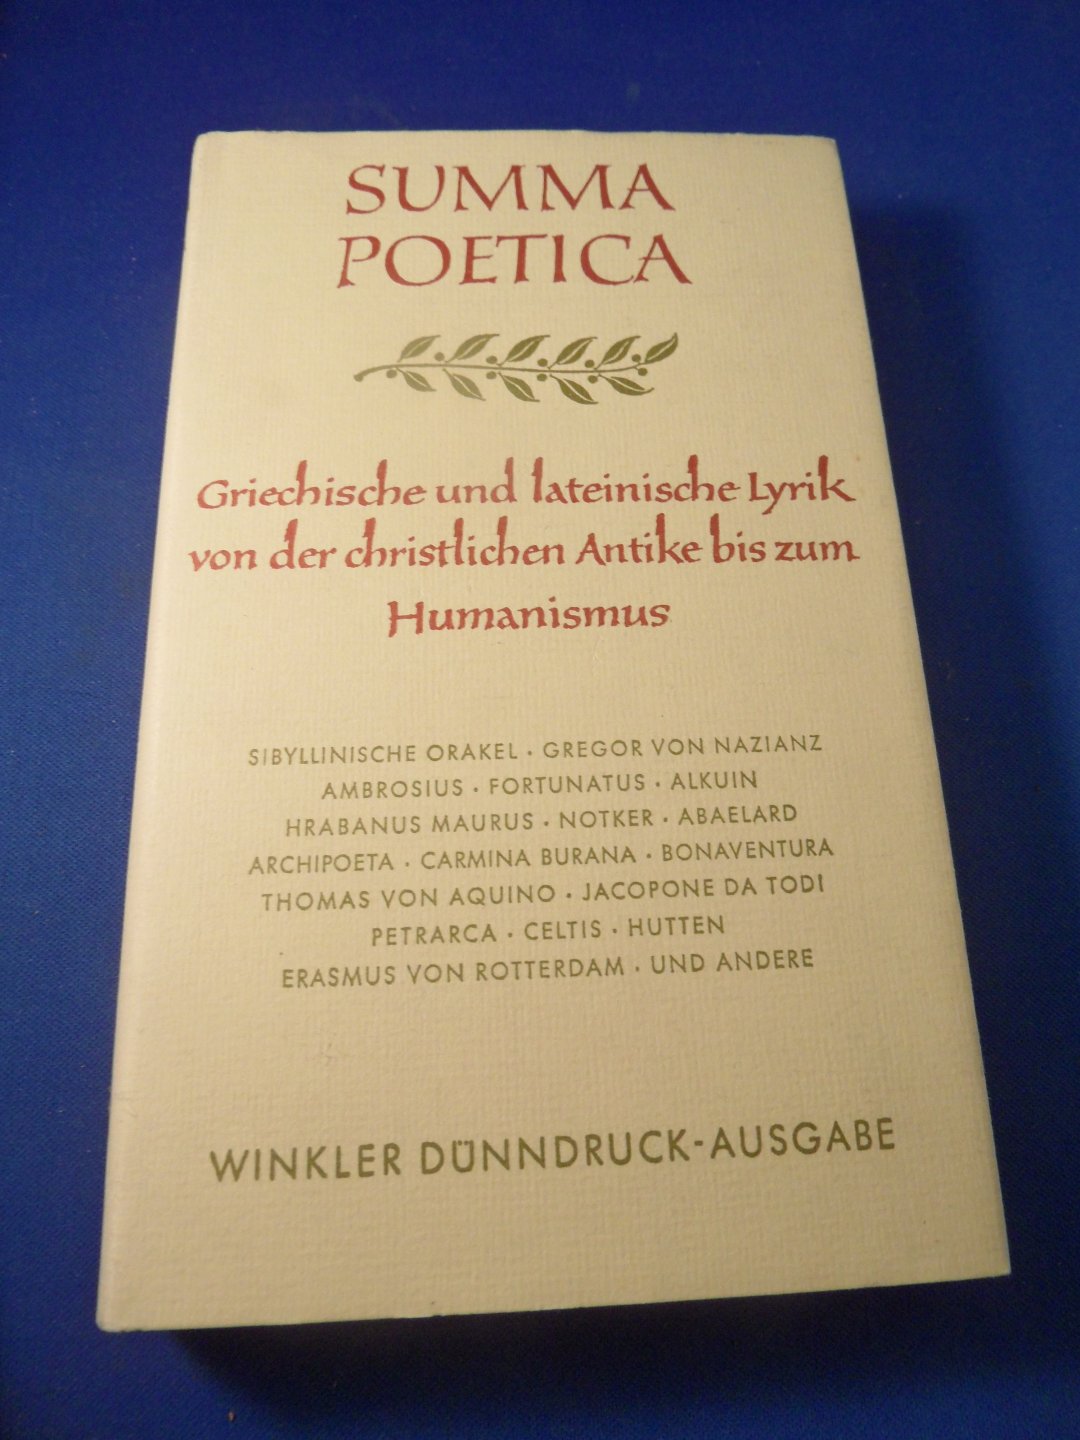  - Summa Poetica, Griechische und lateinische Lyrik von der christlichen Antike bis zum Humanismus